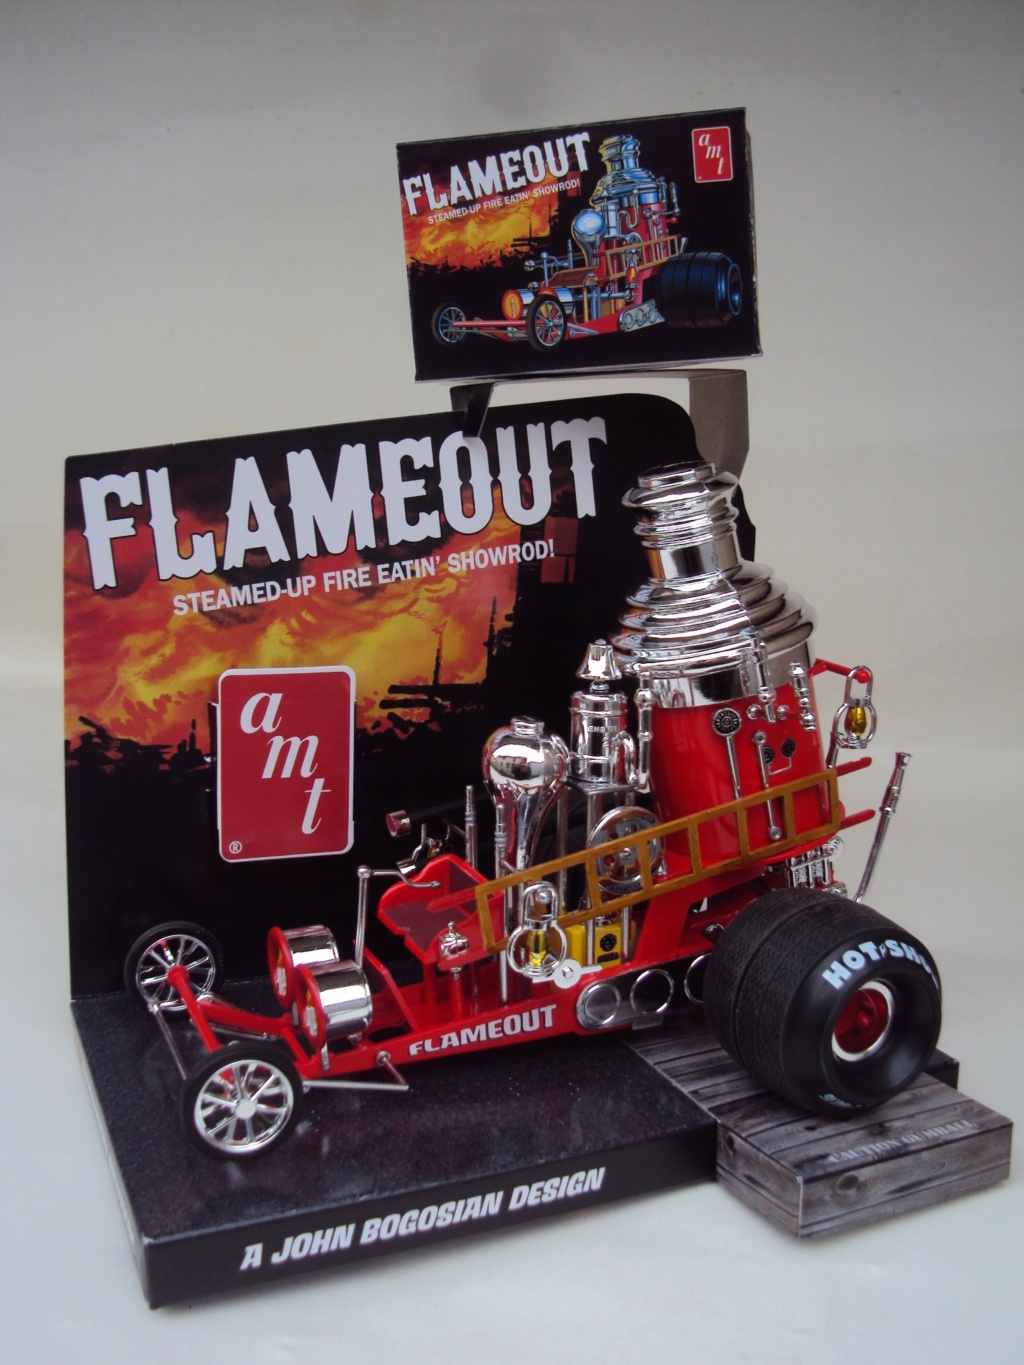 Show Rod "Flameout" Dsc06916